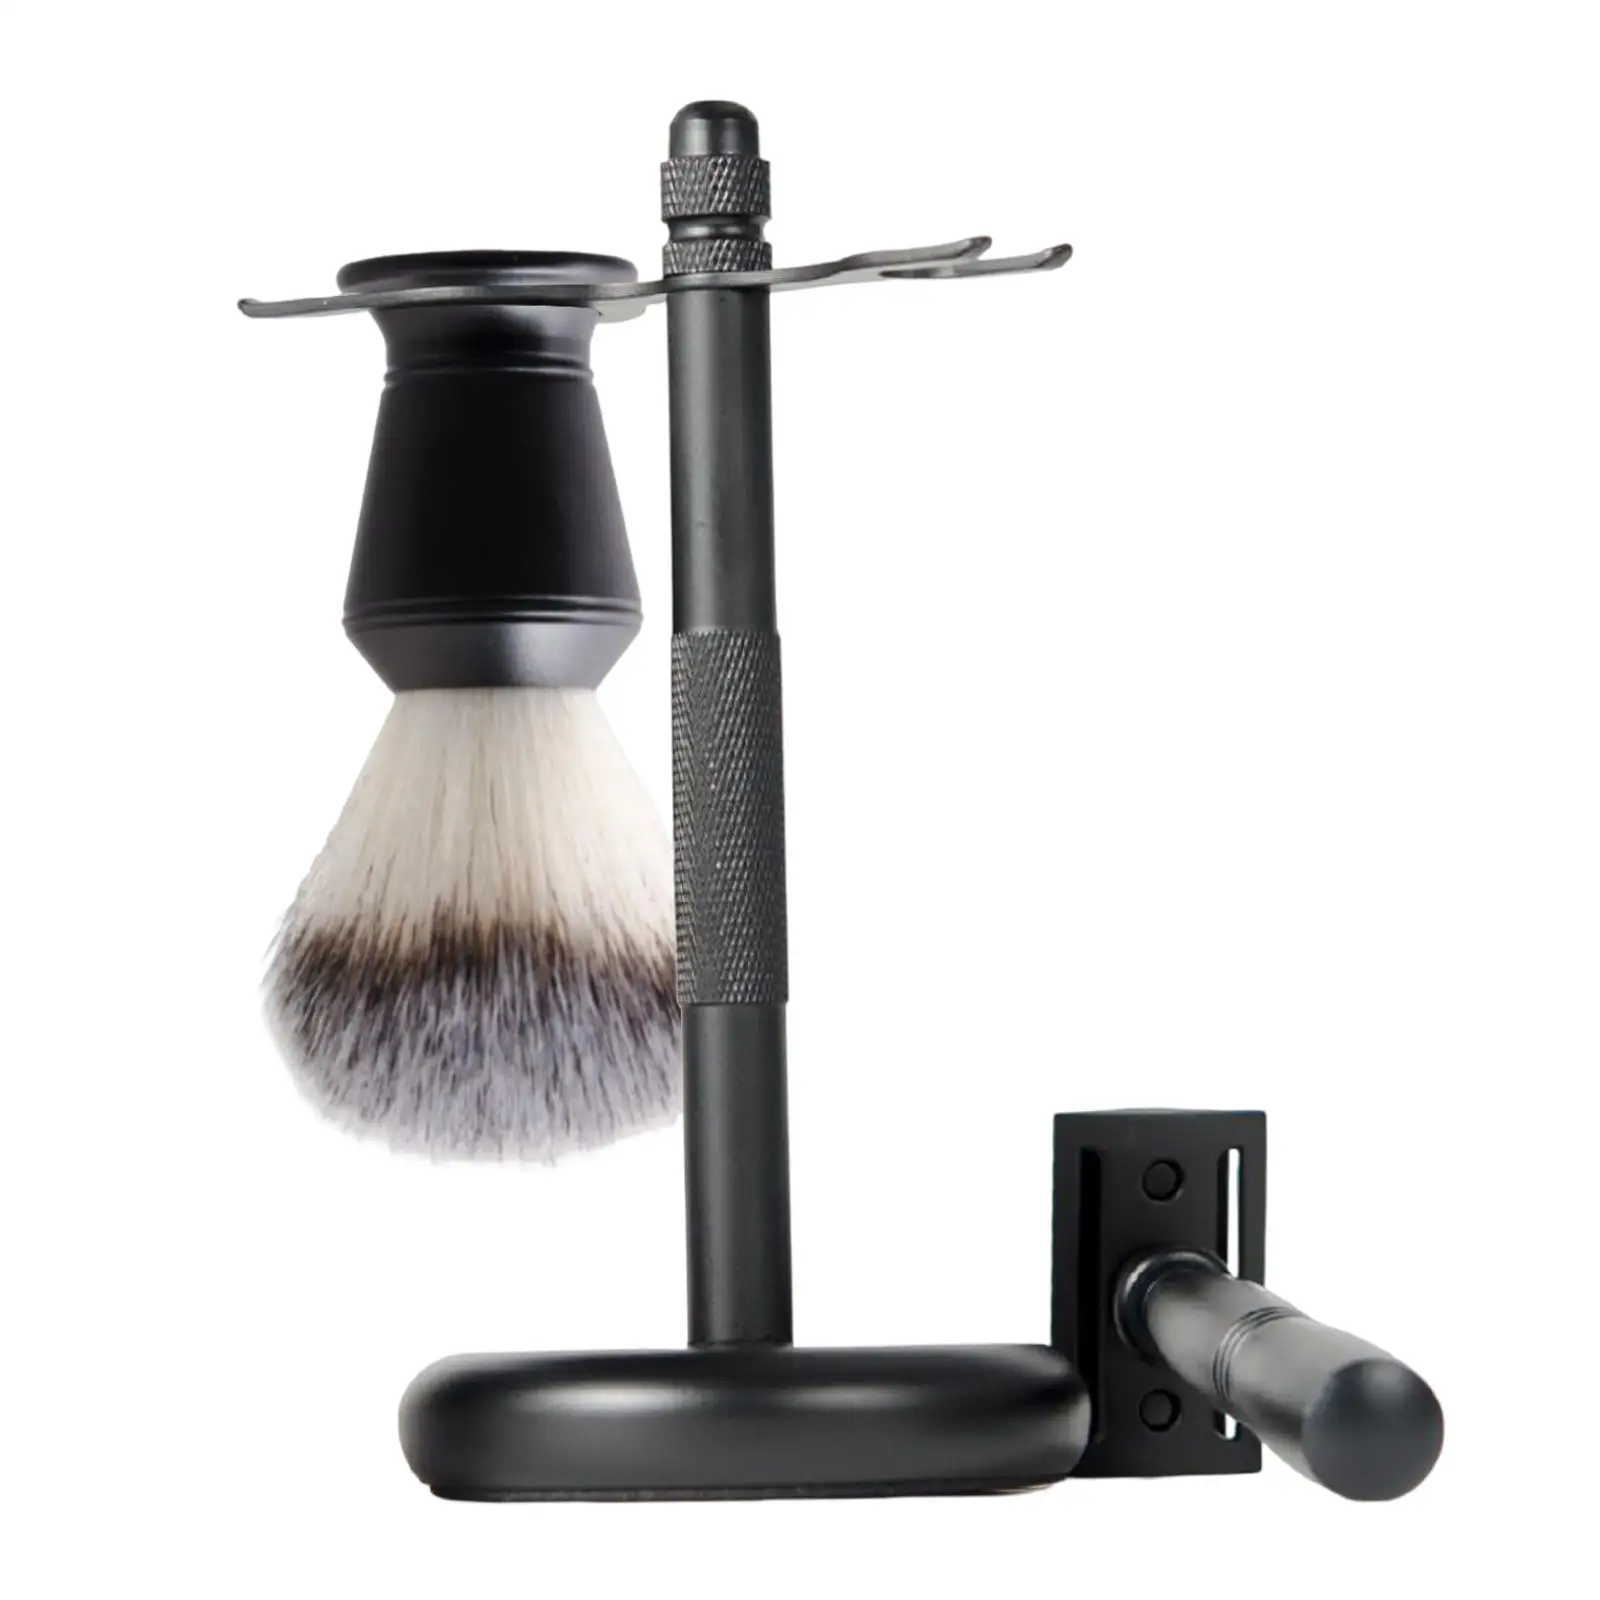 3 Pieces Shaving Kit Black Color Elegant Shaving Brush Shaving Stand Shaving Brush Set Razor+ Stand Holder + Shaving Brush